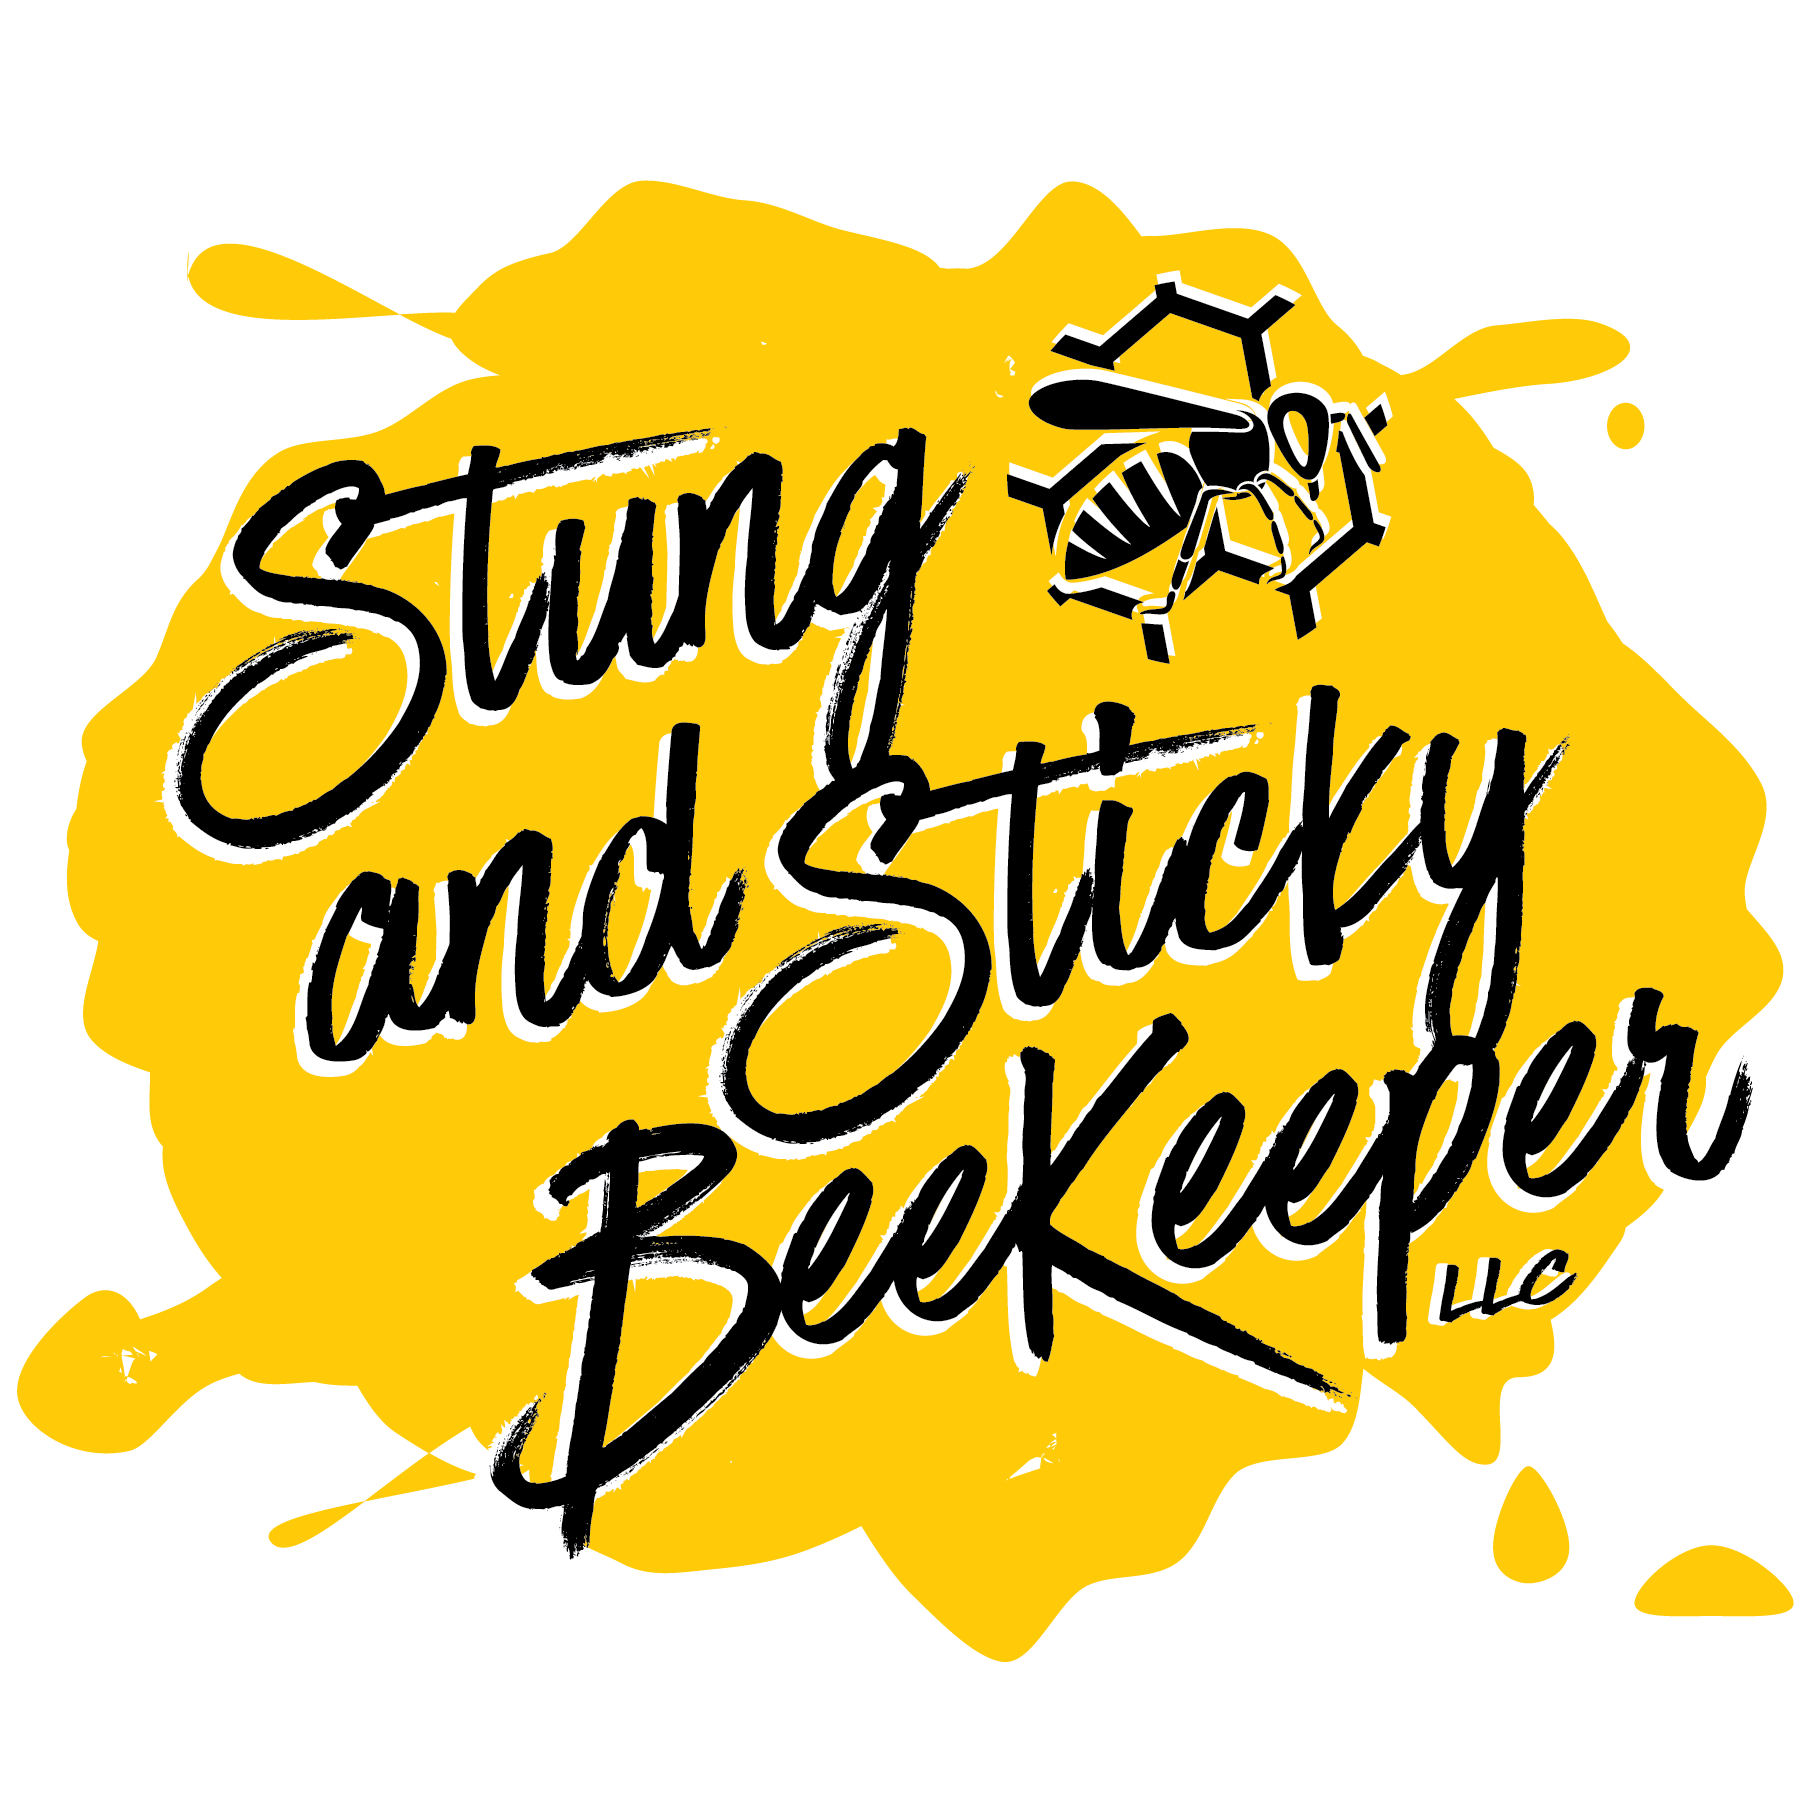 Stung & Sticky Honey